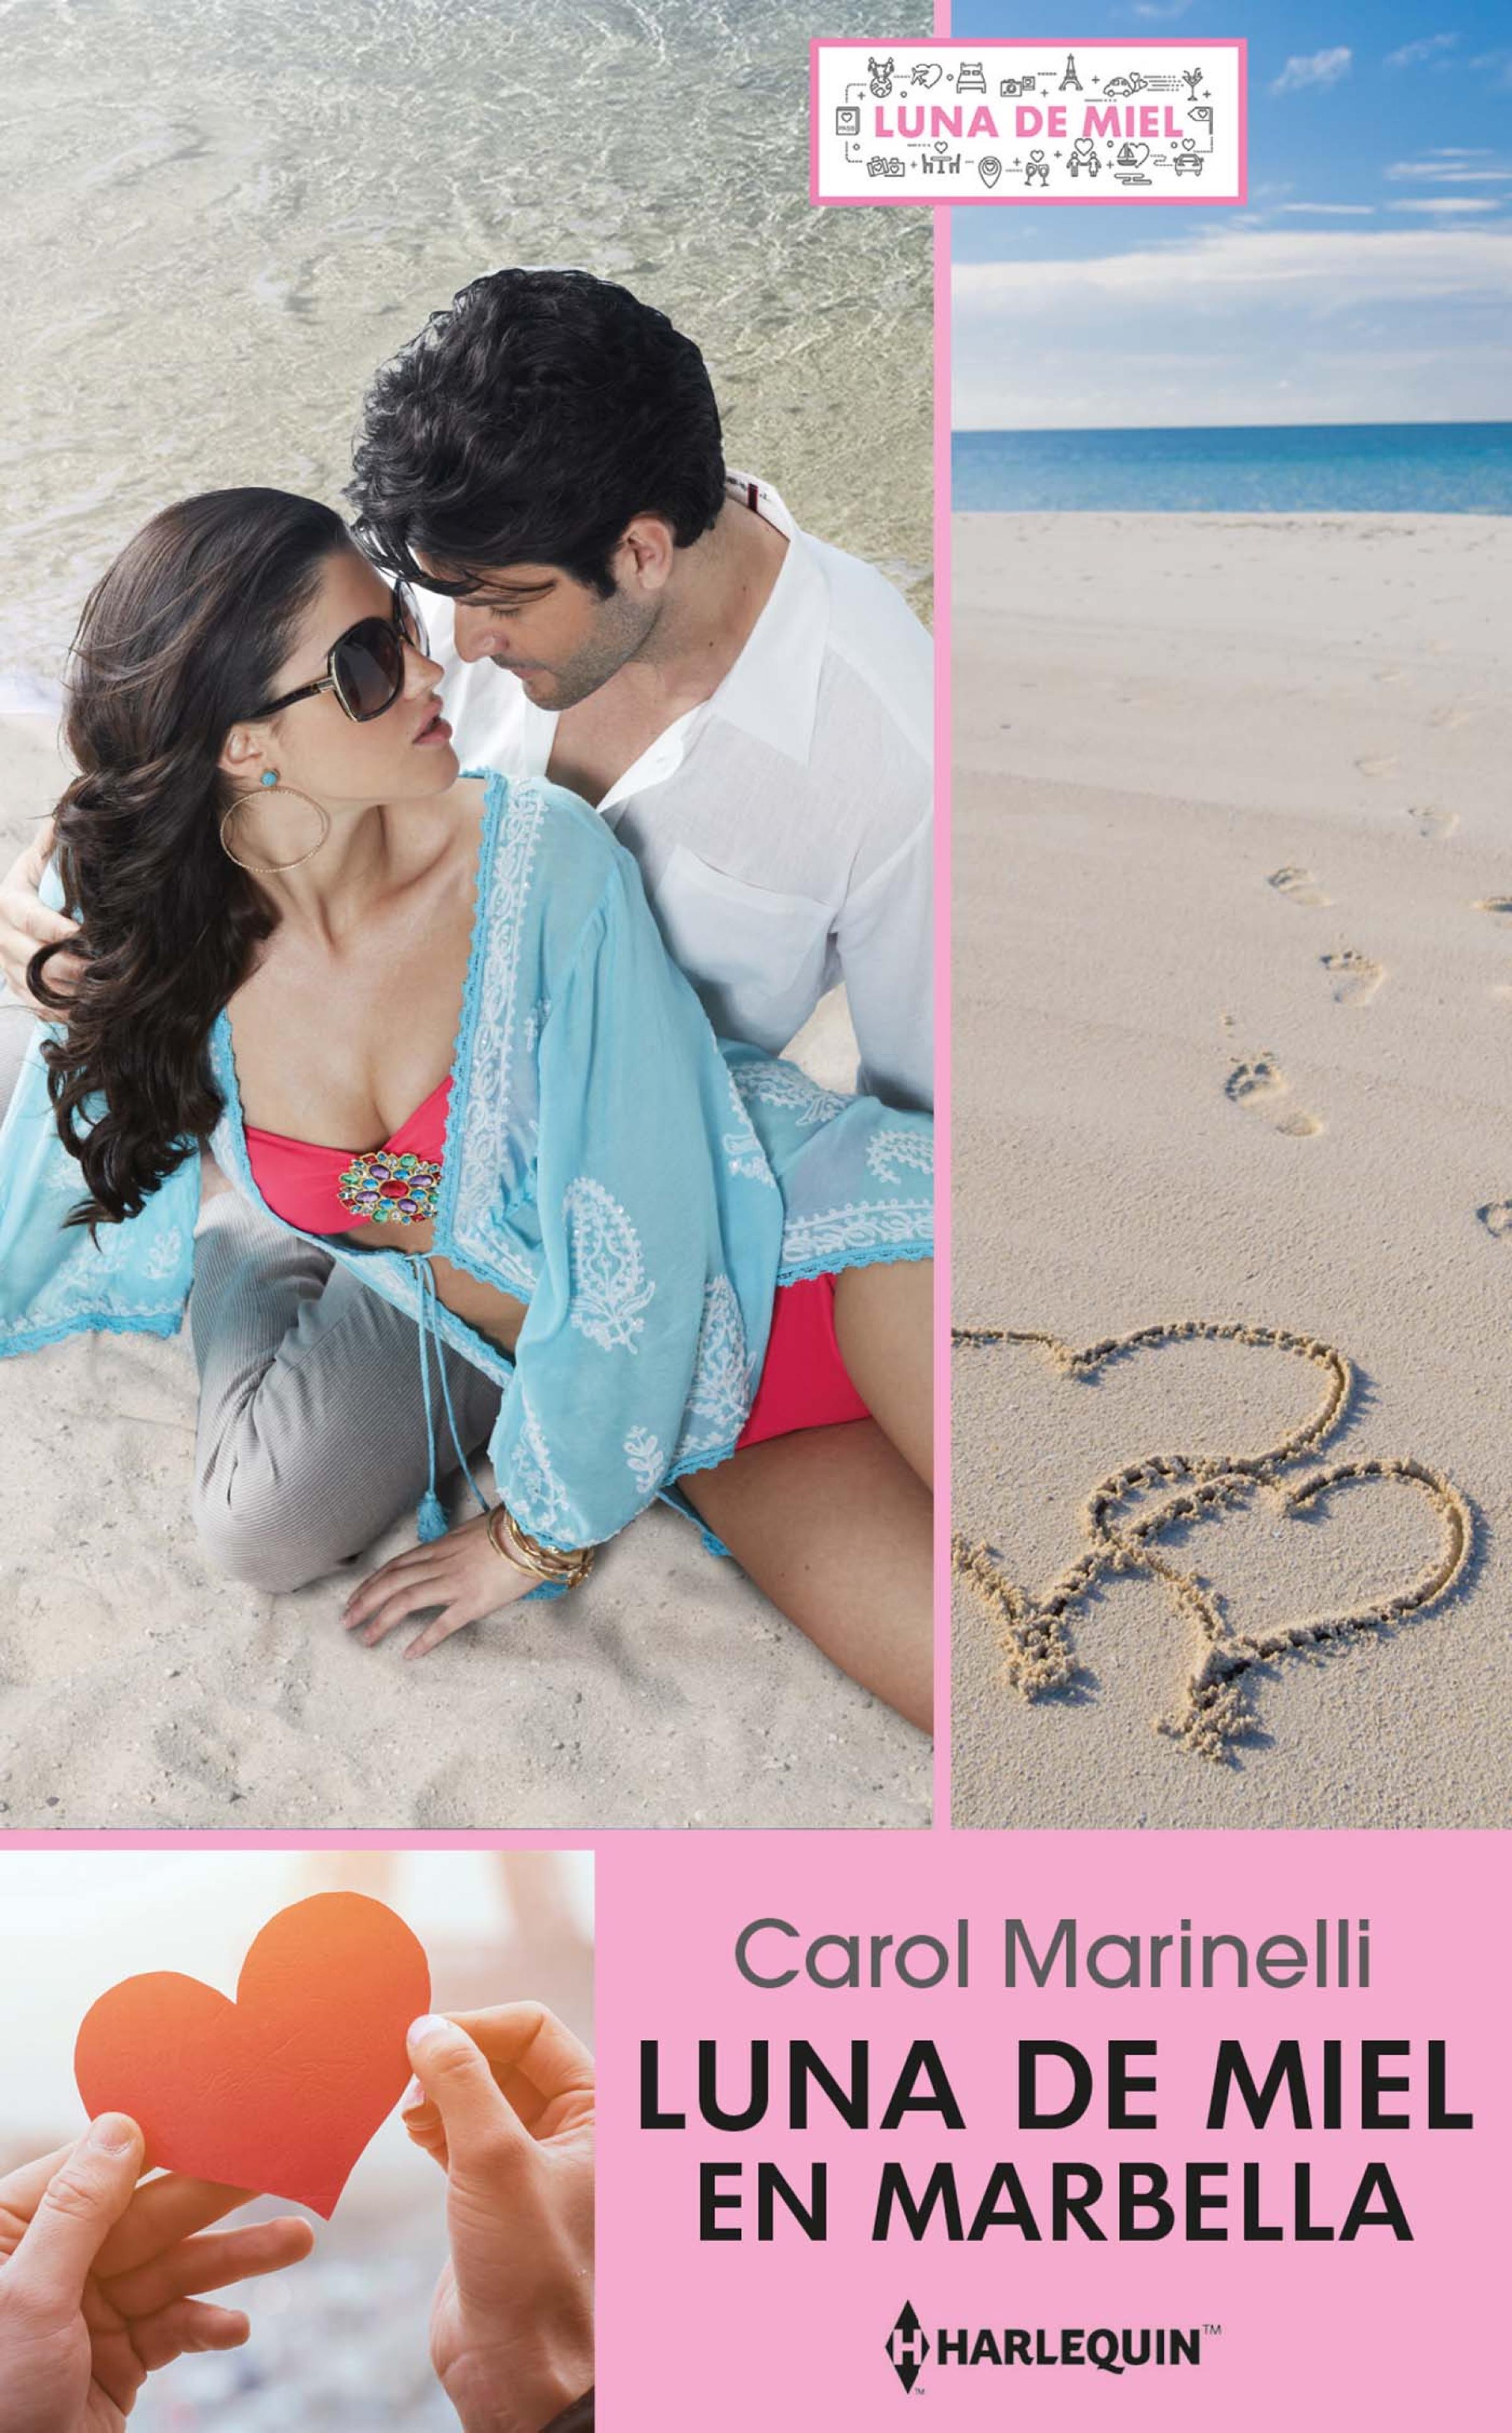 Скачать Luna de miel en Marbella - Carol Marinelli